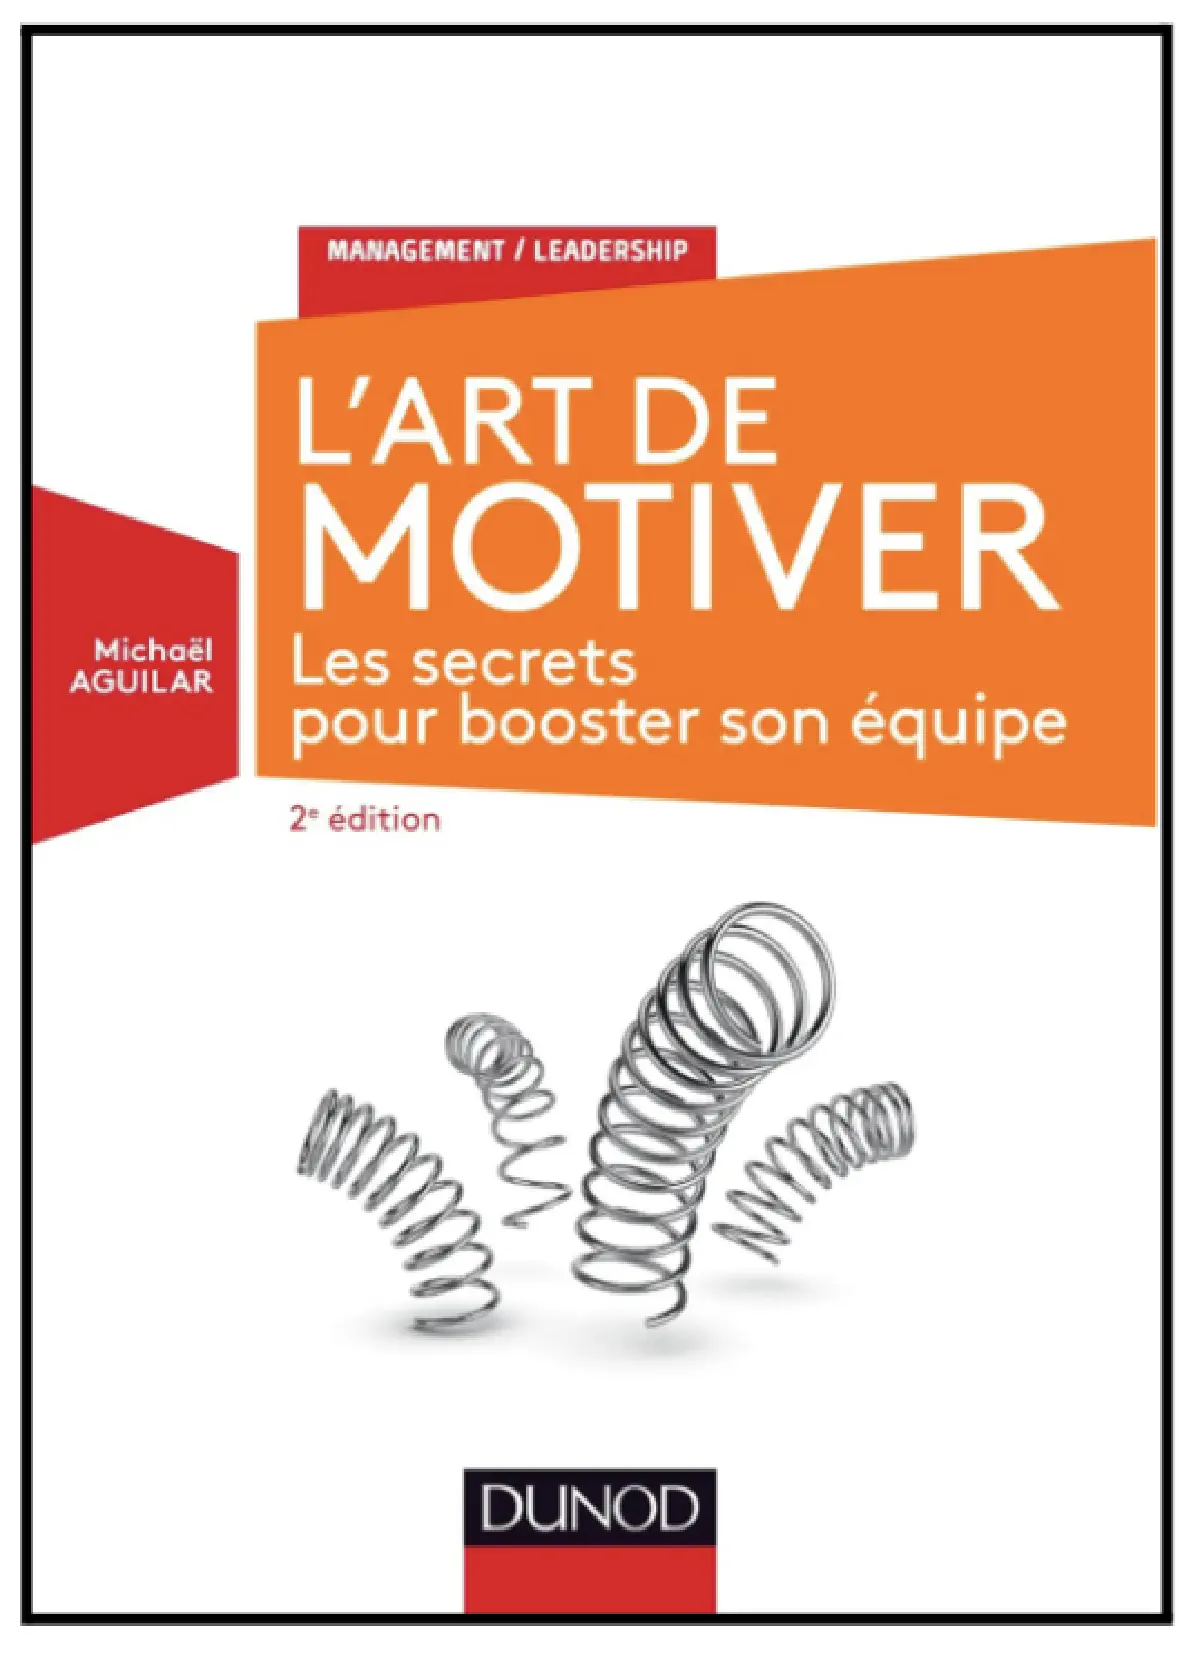 L'Art de motiver - 2e éd. - Les secrets pour booster son équipe de Michaël Aguilar